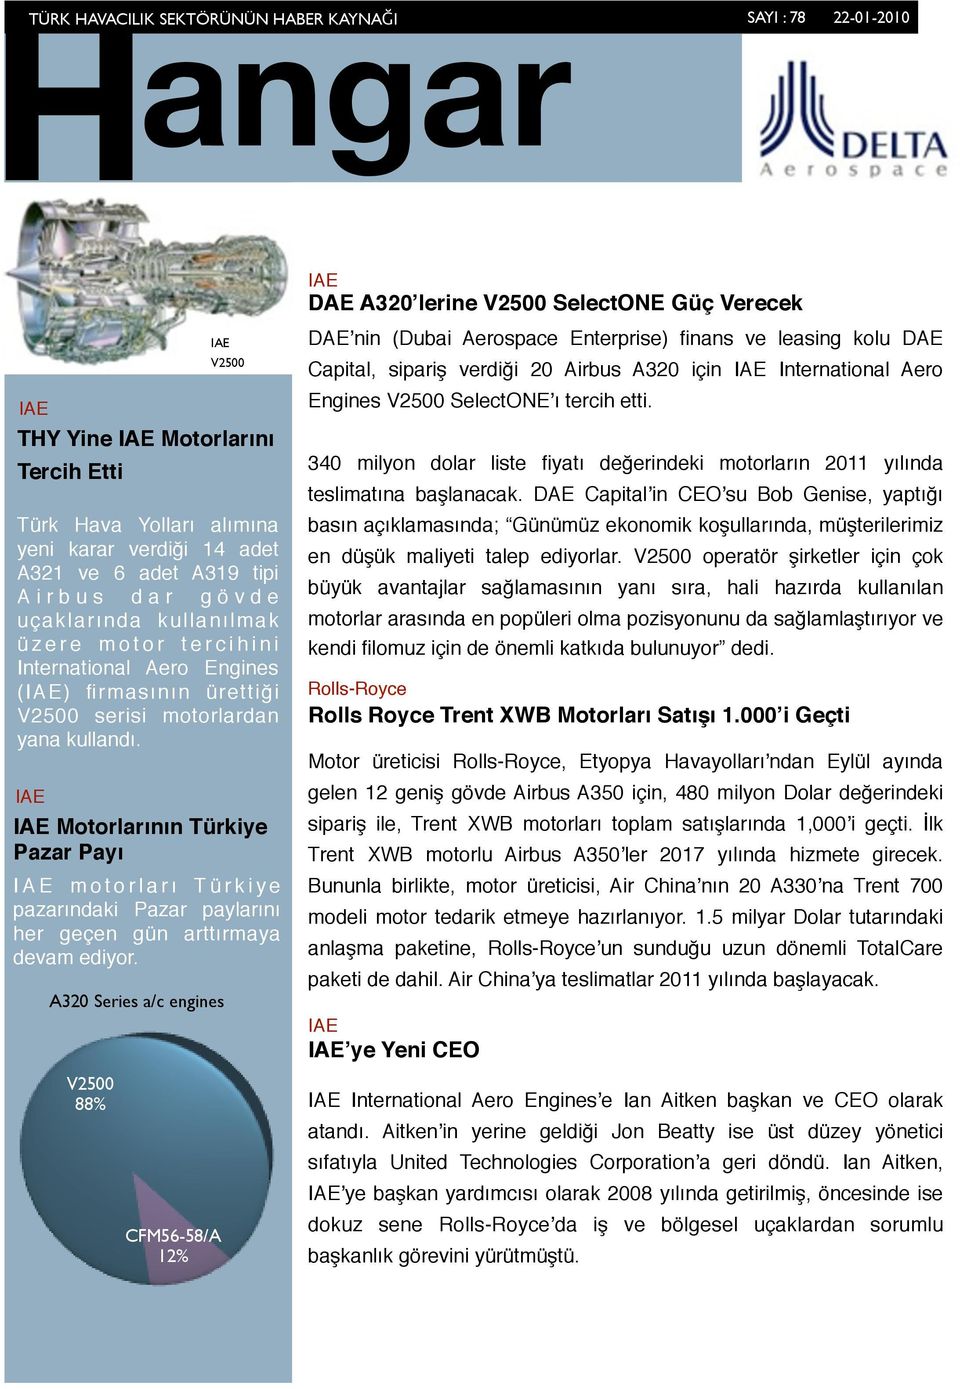 V2500 88% Motorlarının Türkiye Pazar Payı I A E m o t o r l a r ı T ü r k i y e pazarındaki Pazar paylarını her geçen gün arttırmaya devam ediyor.